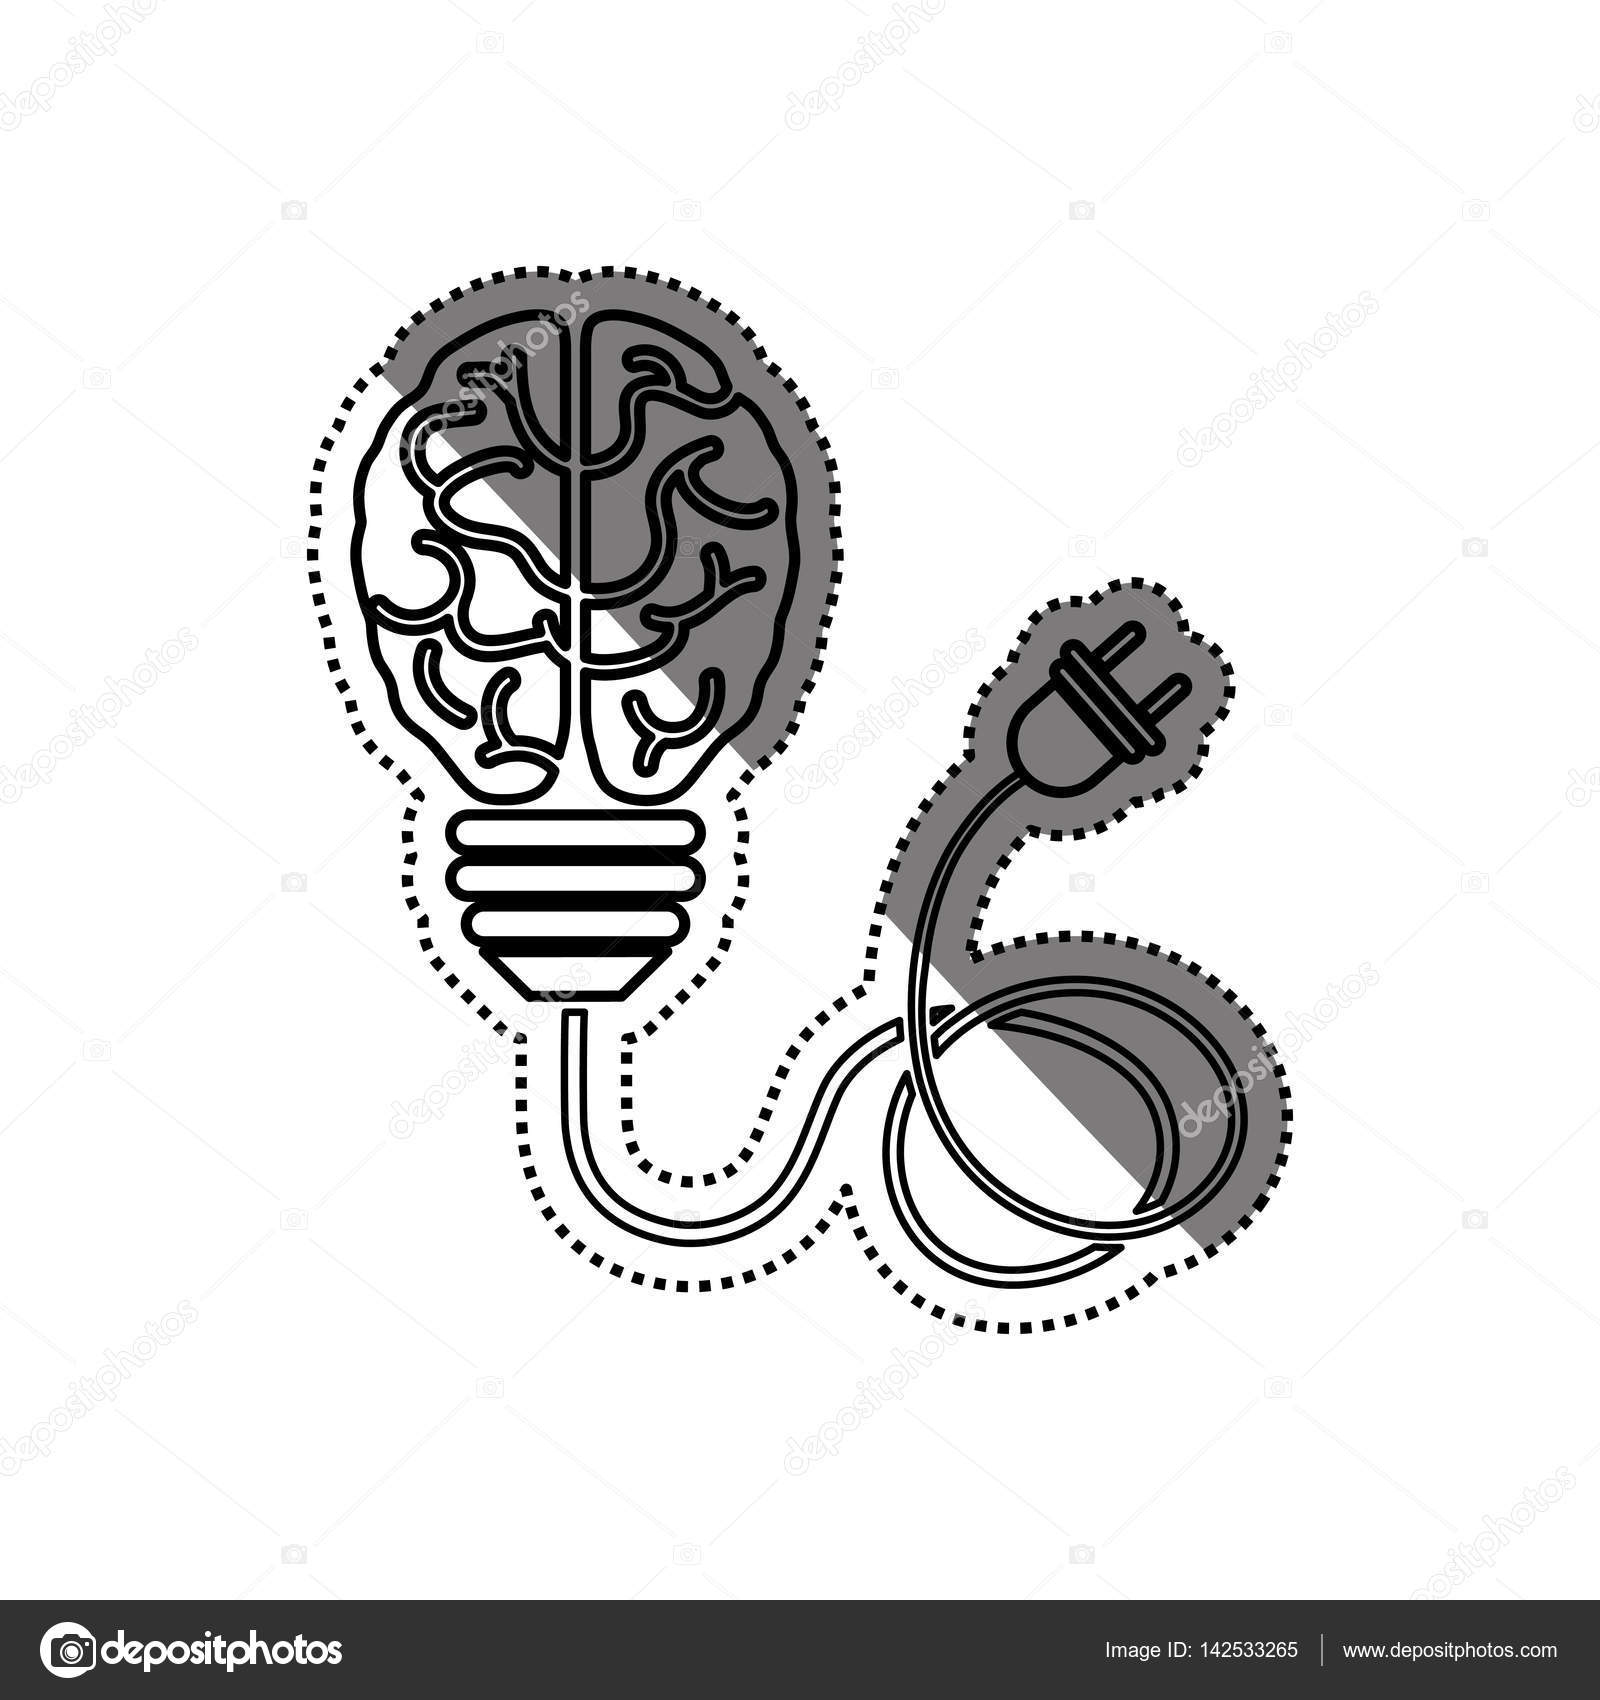 Gluhbirnenidee Und Menschliches Gehirn Vektorgrafik Lizenzfreie Grafiken C Djv Depositphotos